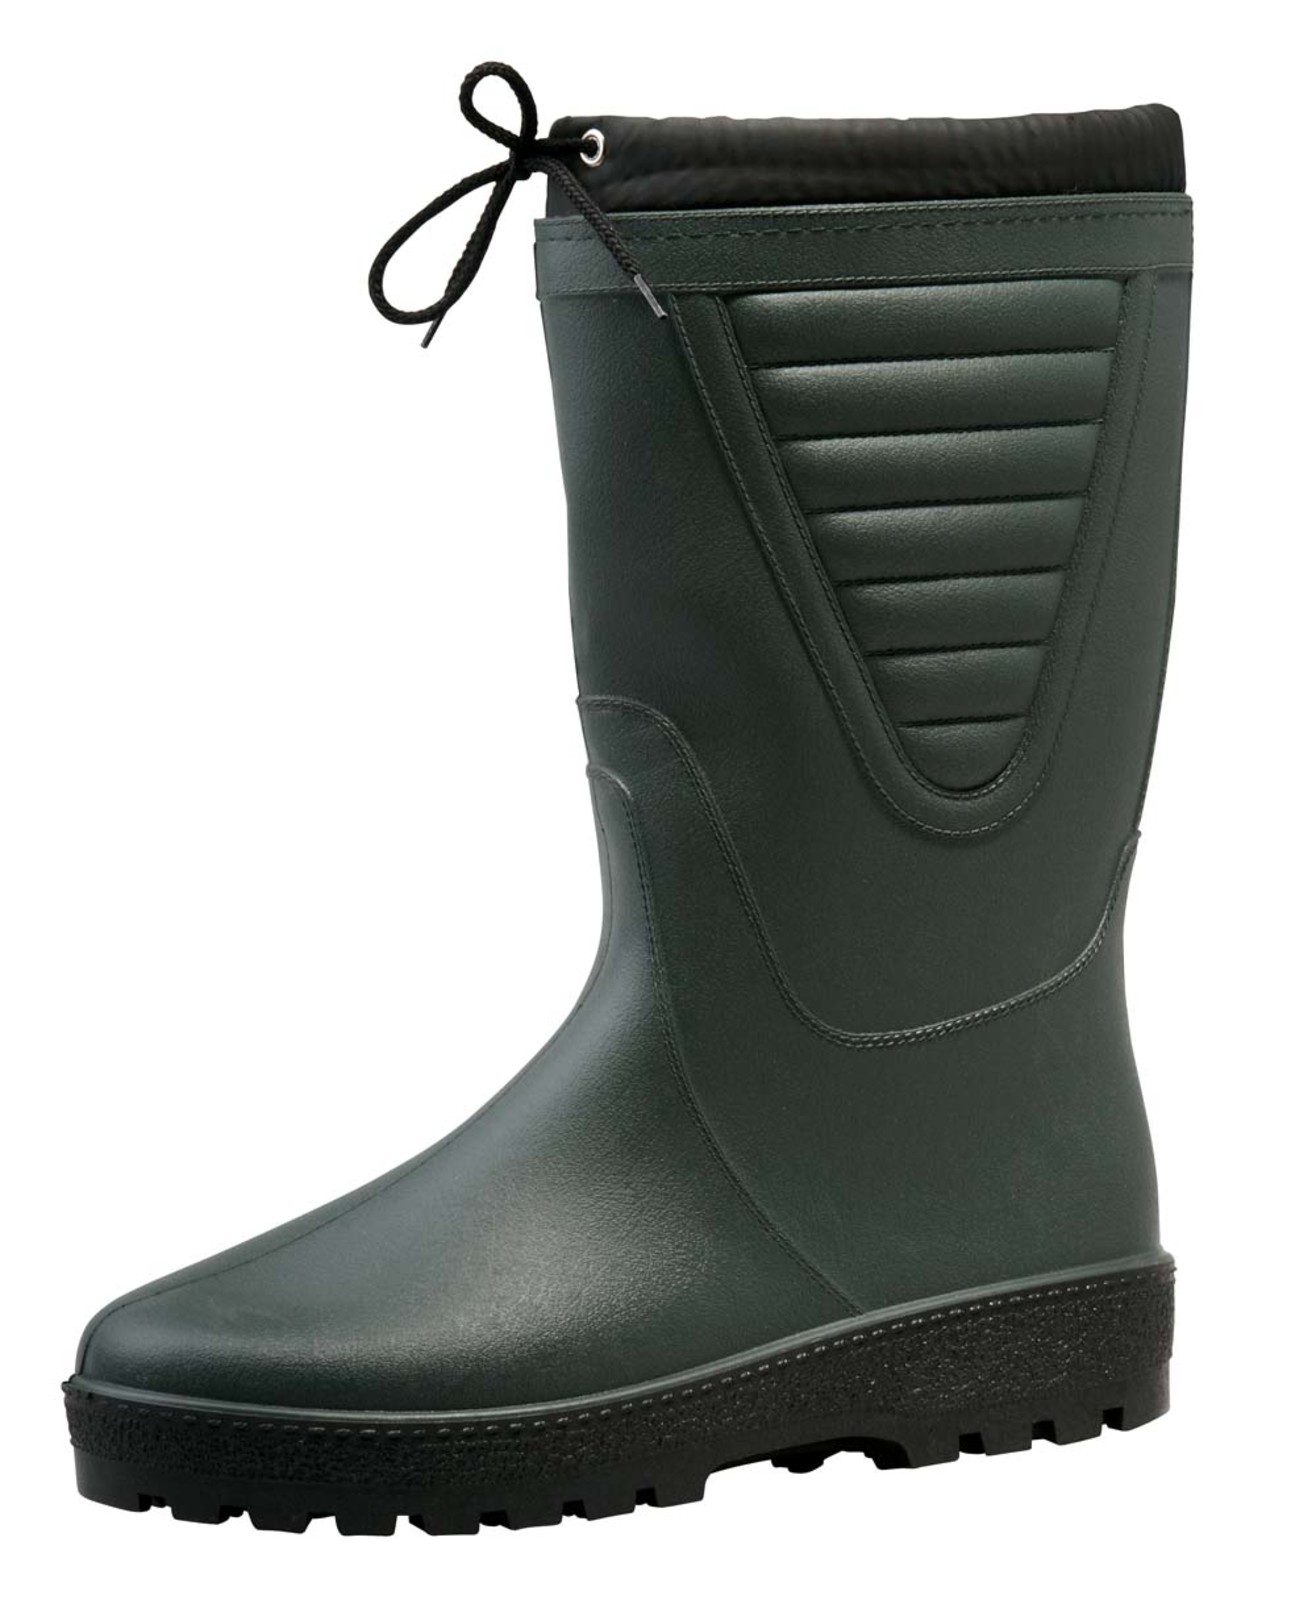 Zateplené čižmy Boots Polar - veľkosť: 40, farba: zelená